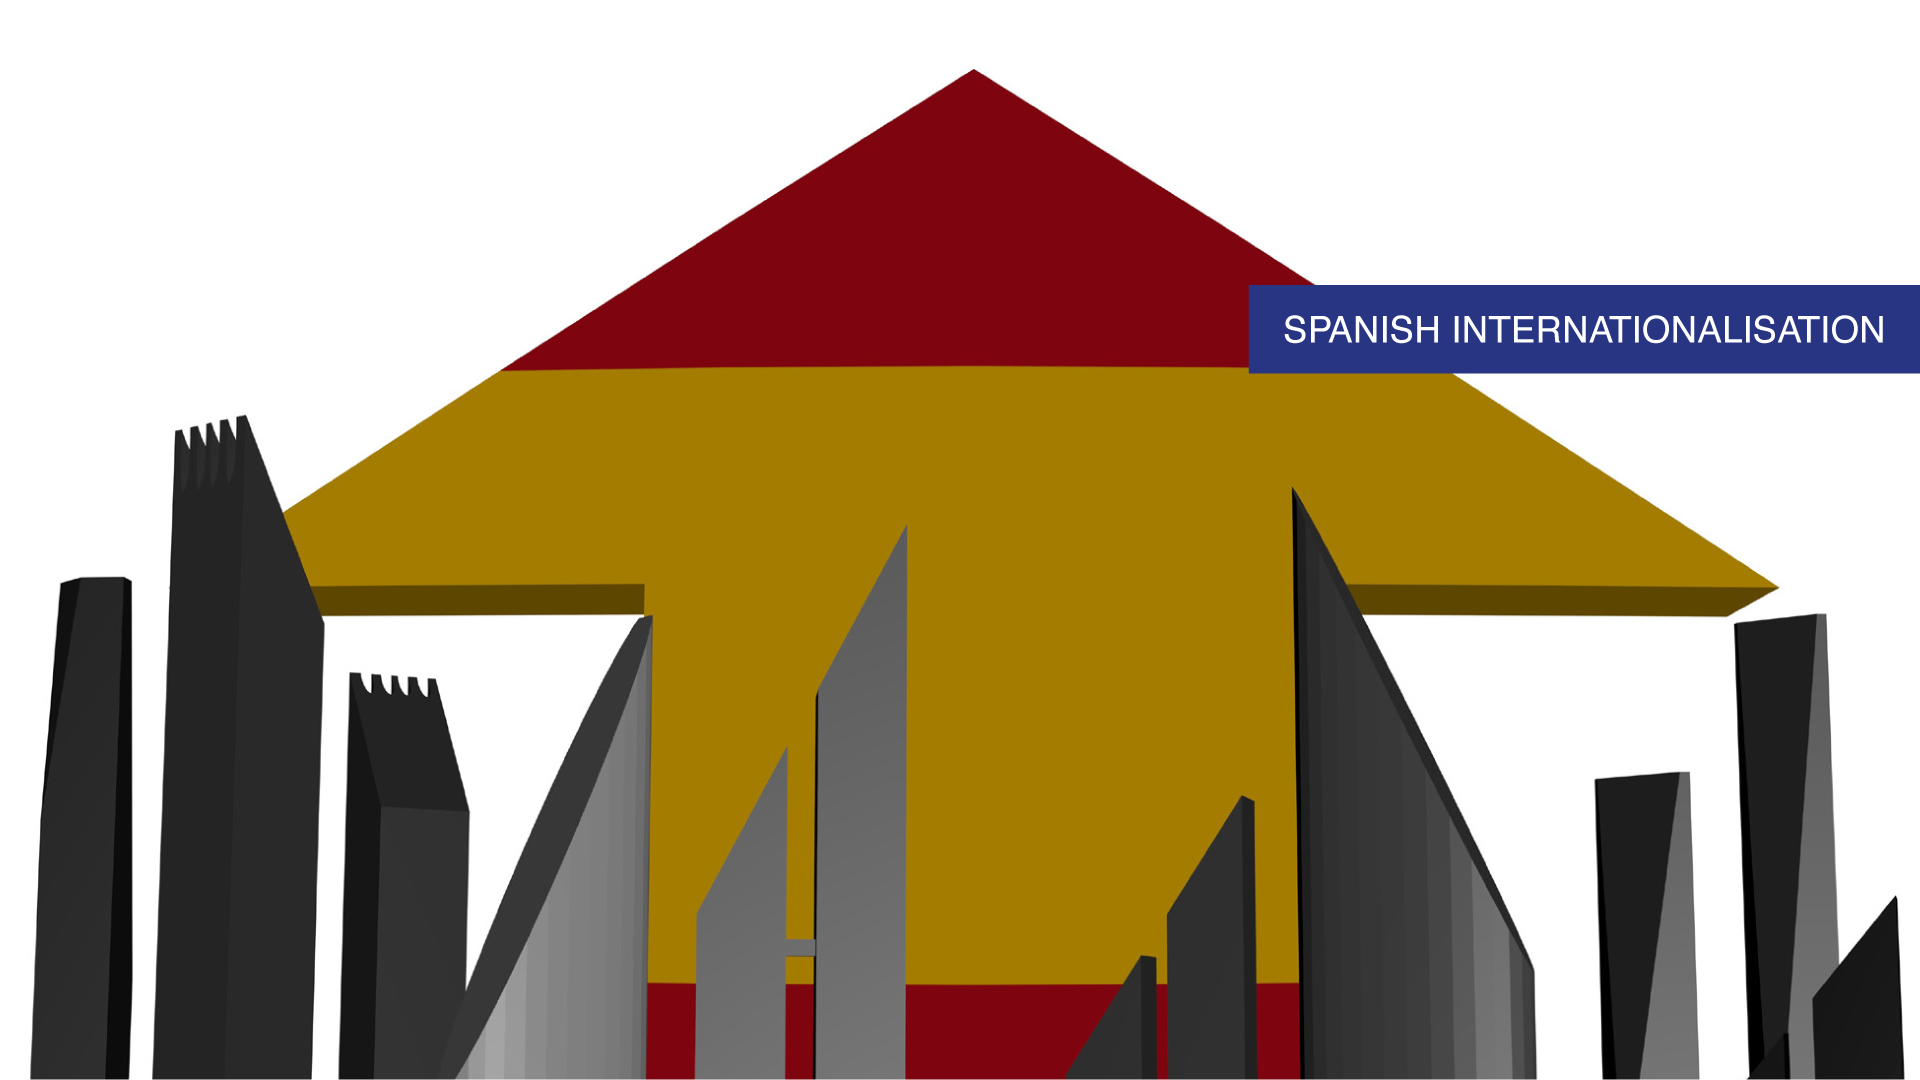 Internacionalització a Espanya